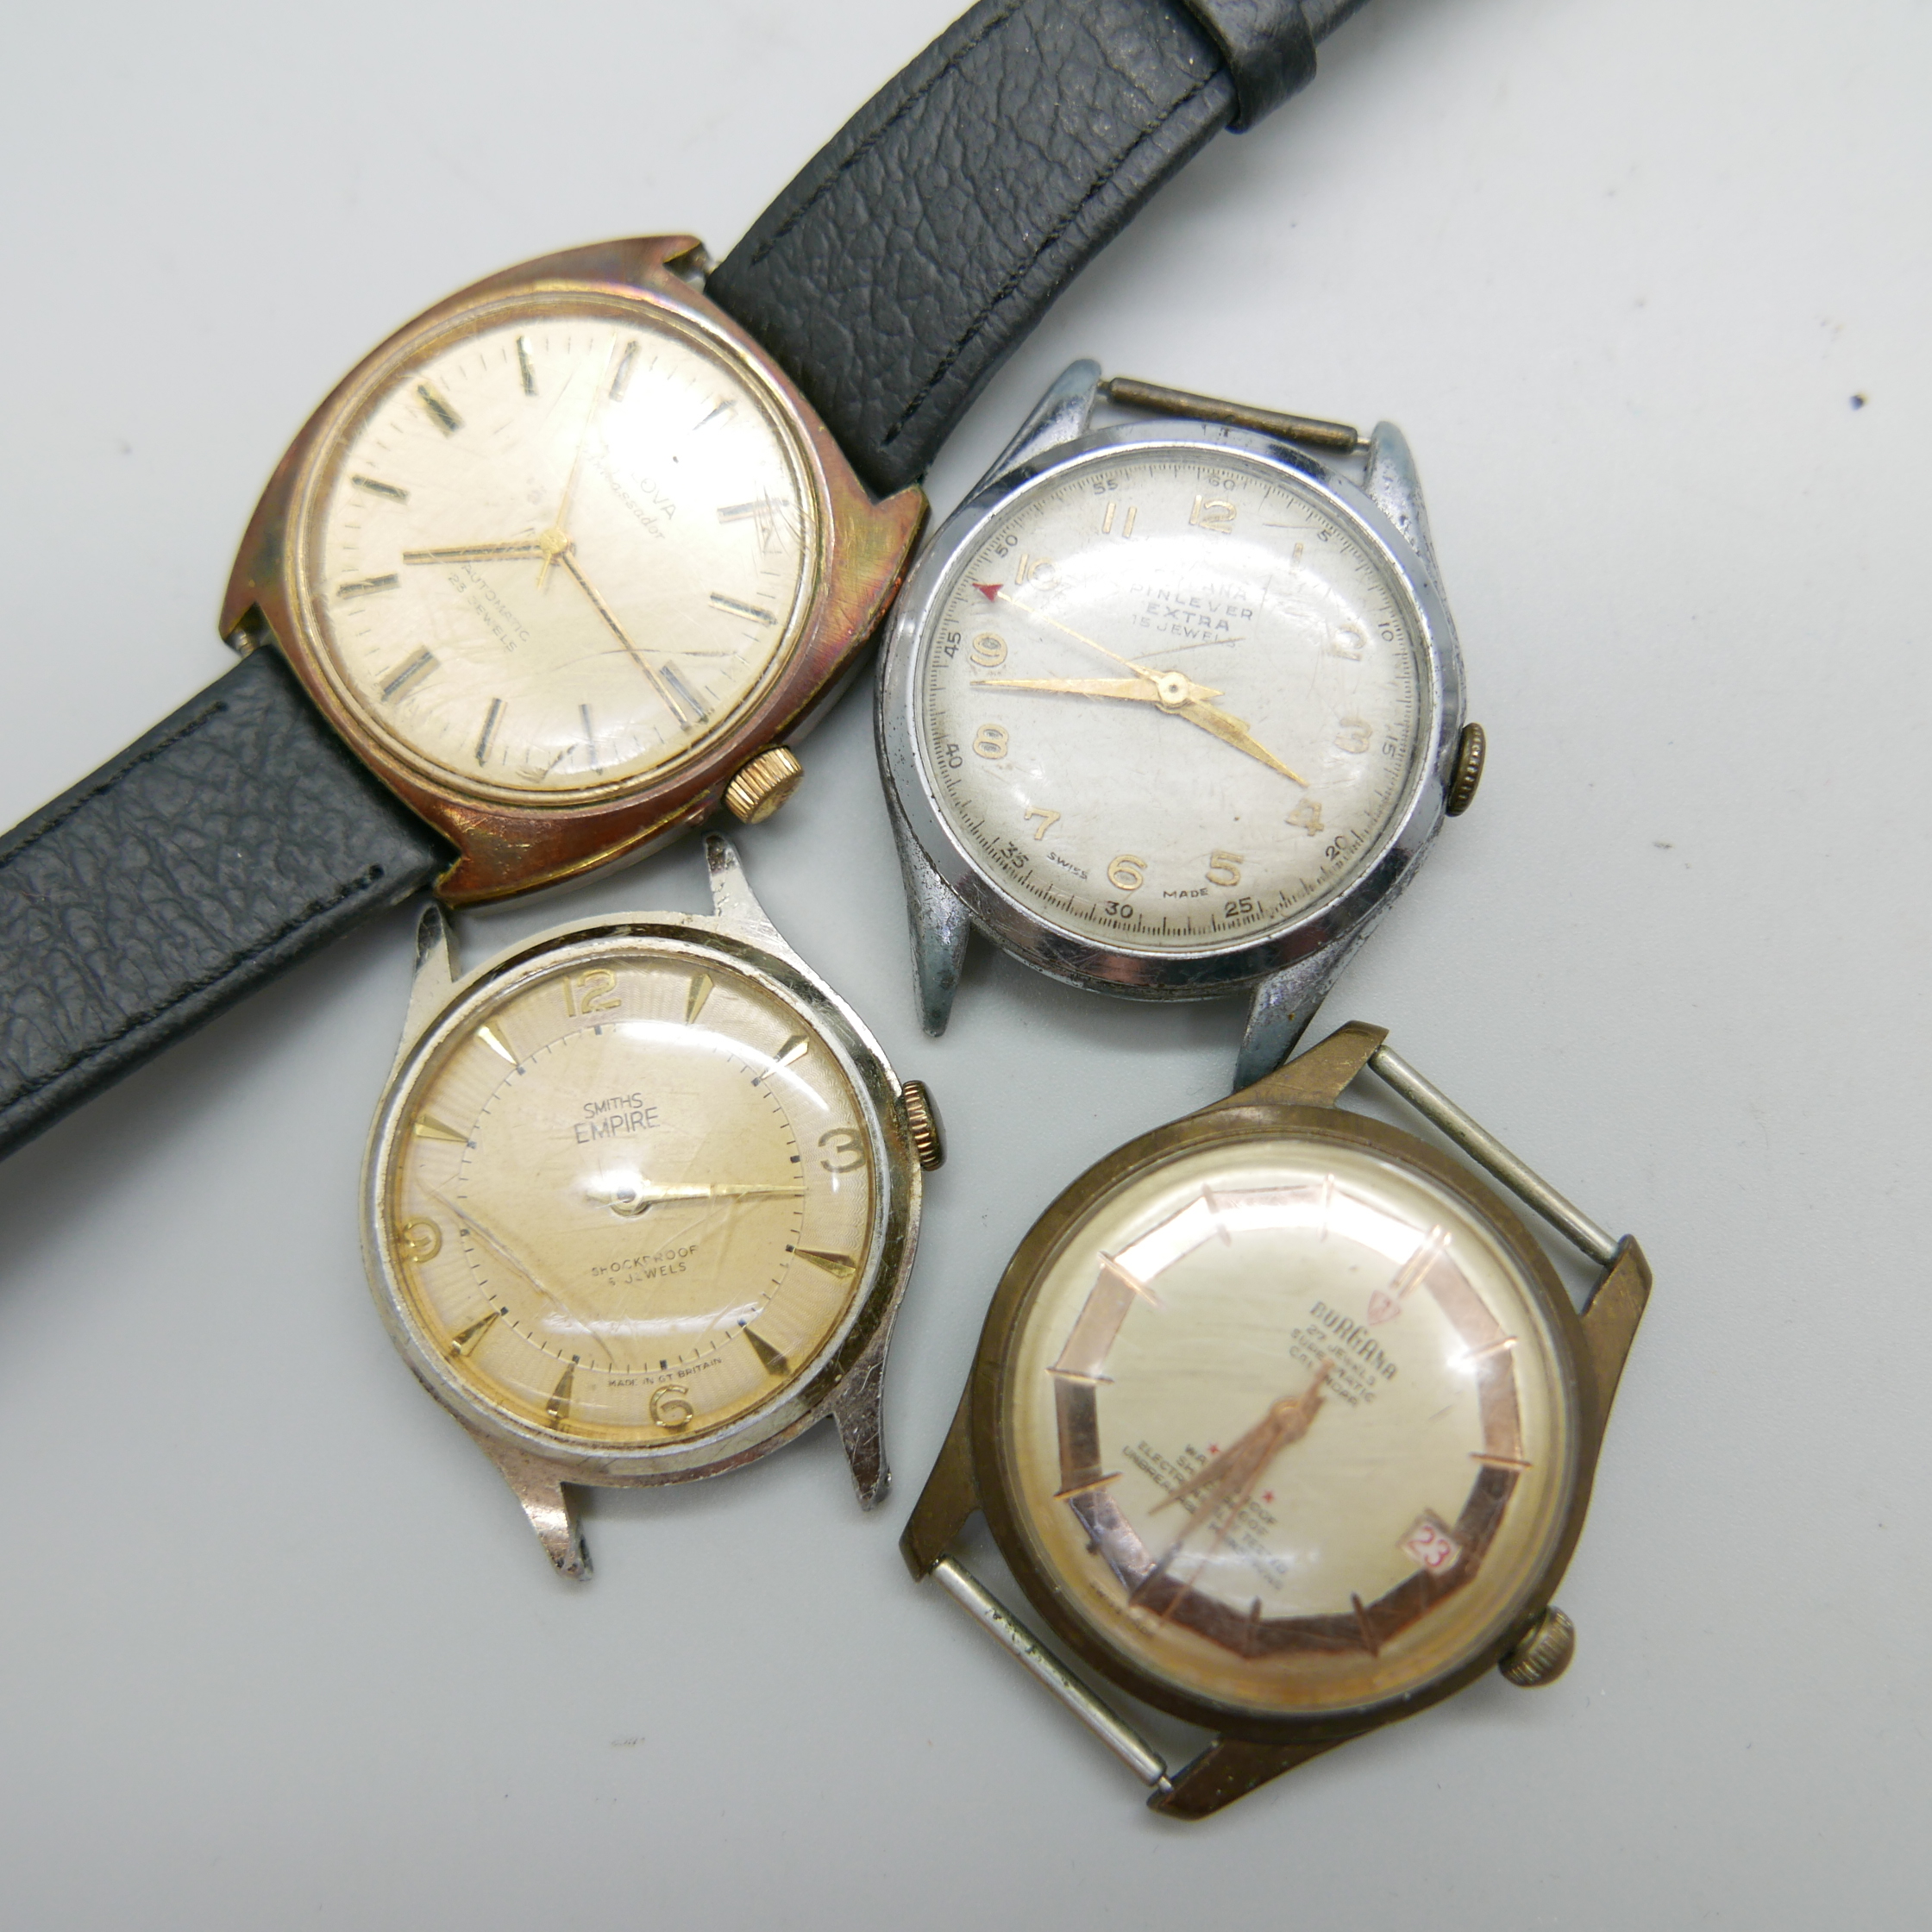 Seven wristwatches including Bulova and Seiko quartz - Image 4 of 4